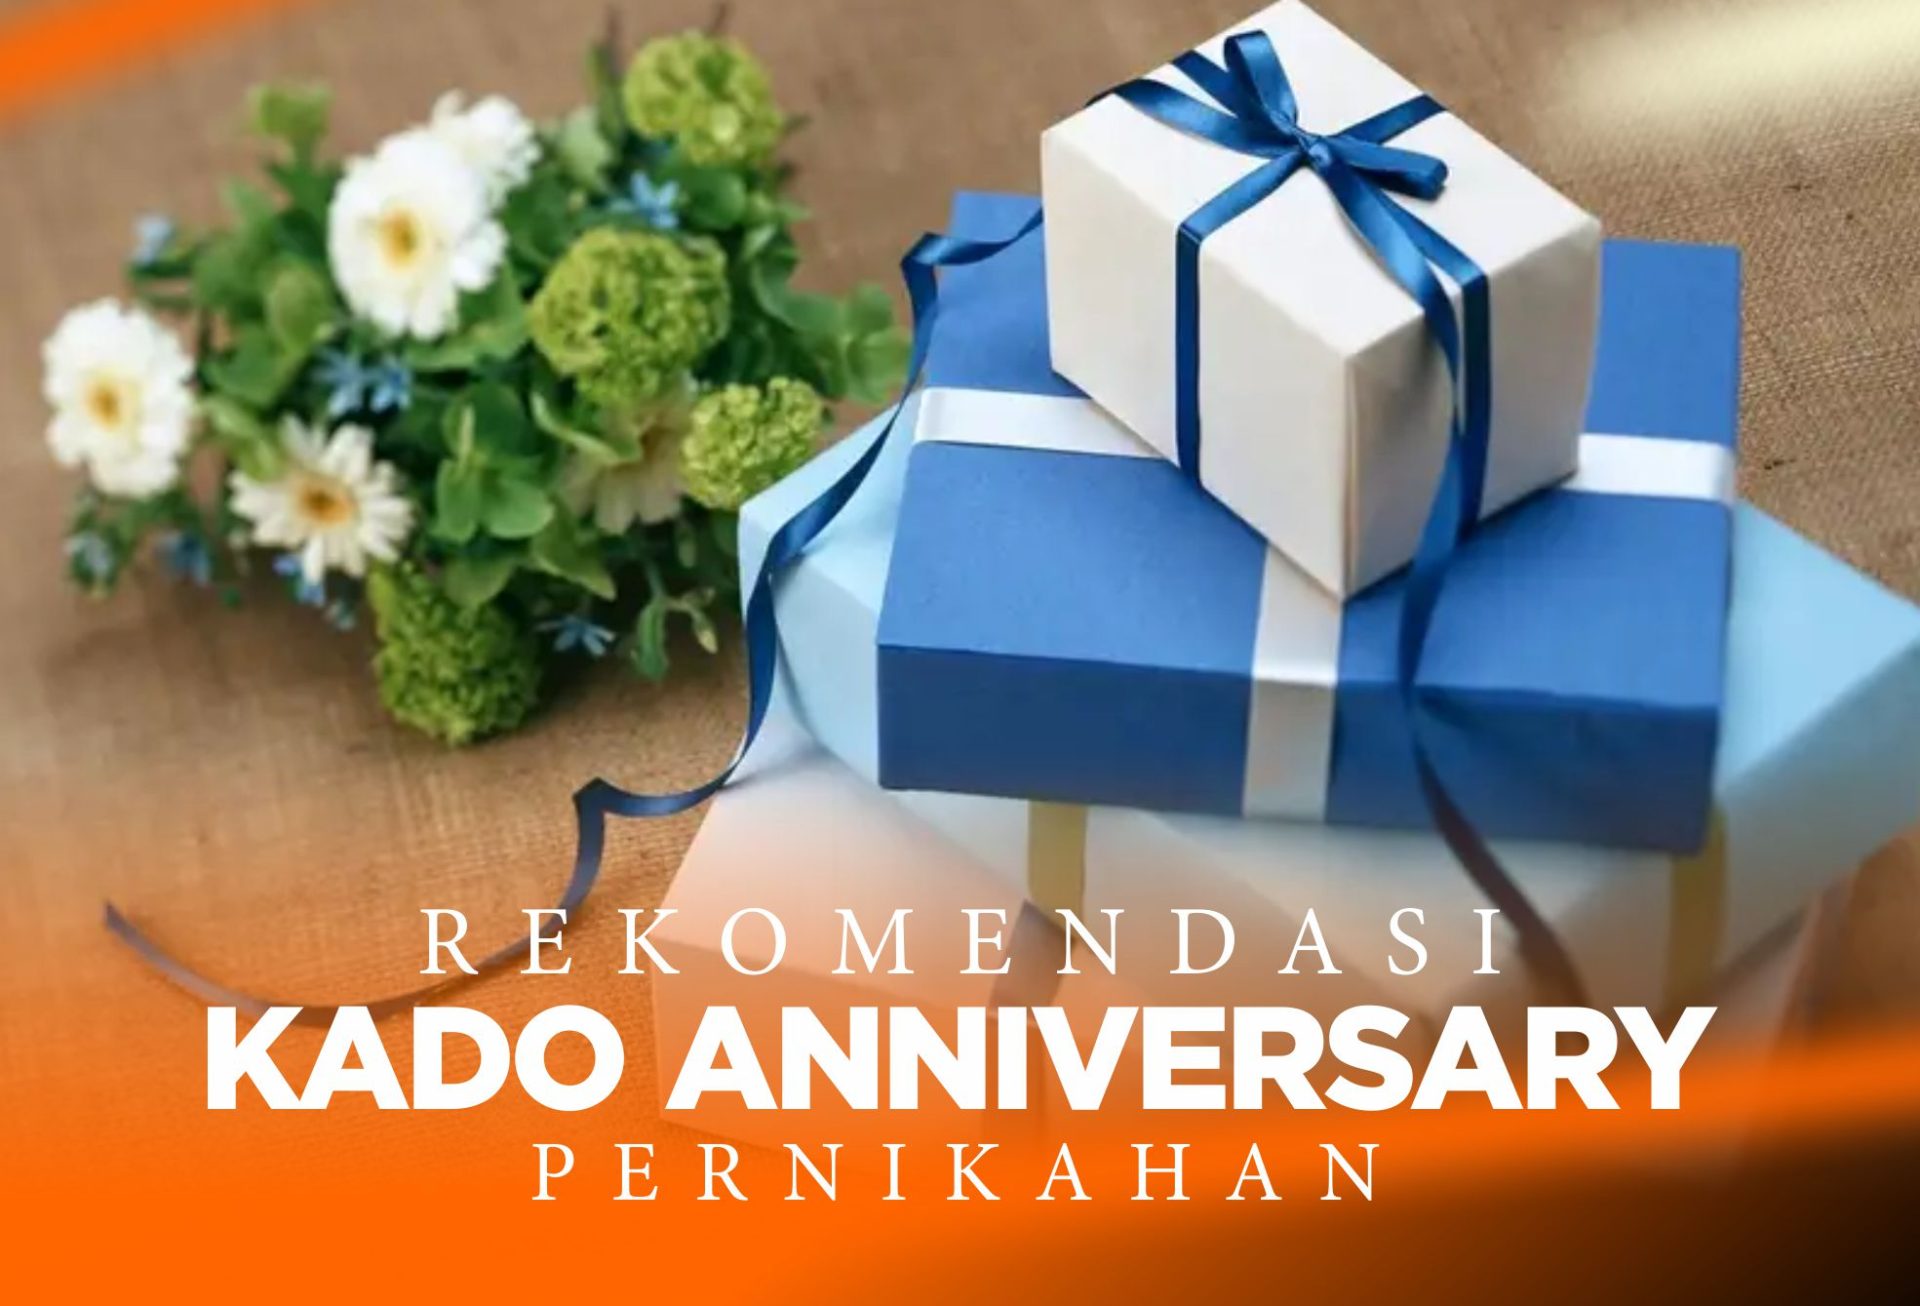 15 Kado Anniversary Pernikahan yang Simple dan Romantis